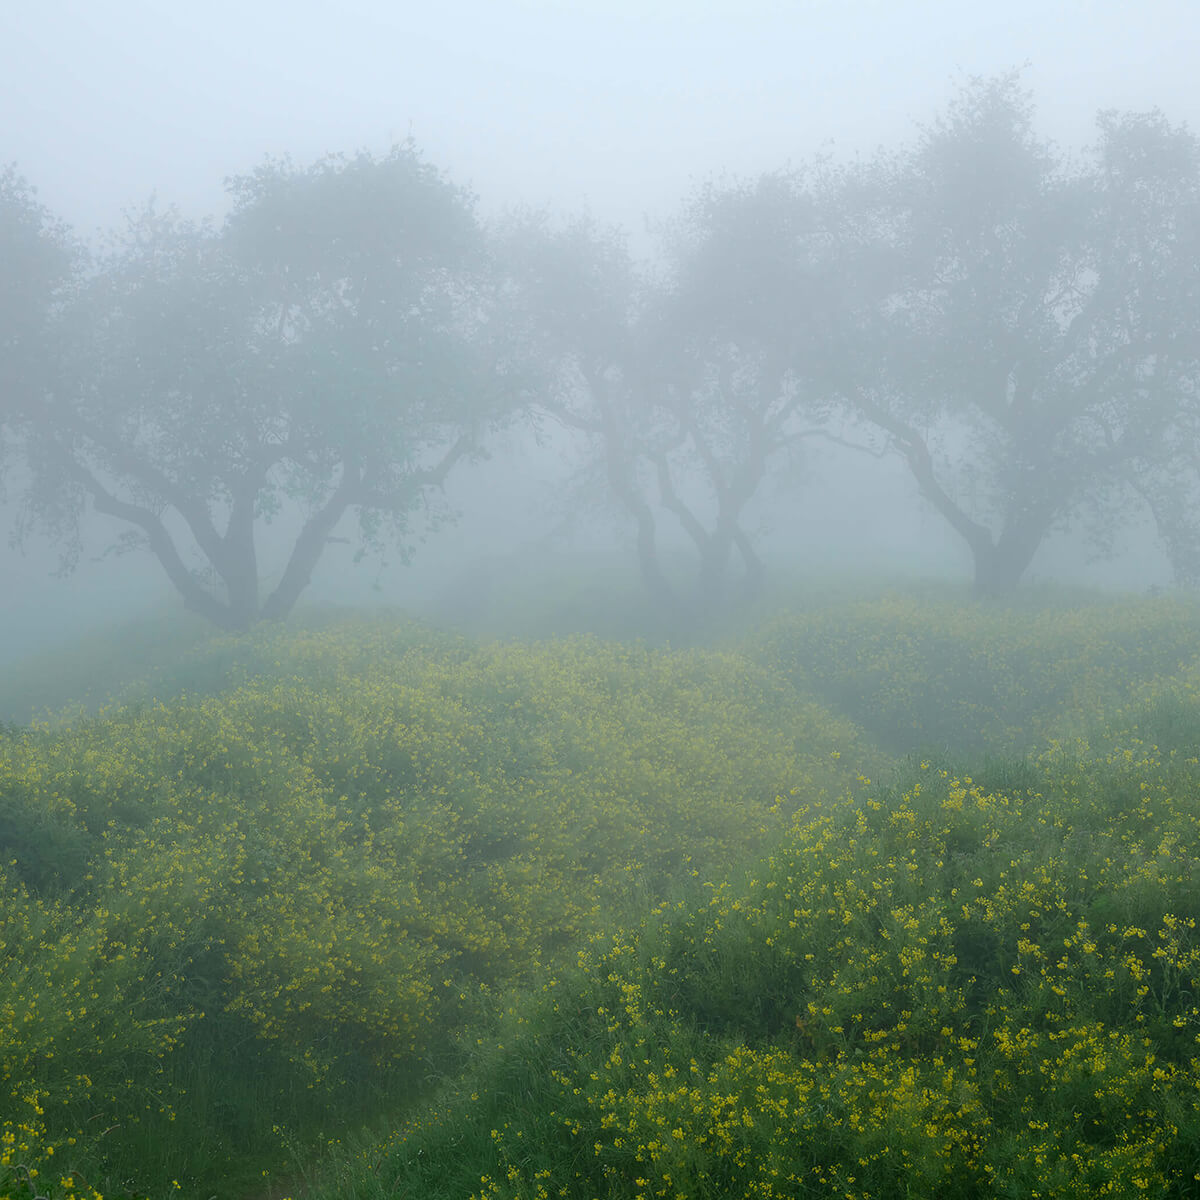 Trees in dense fog